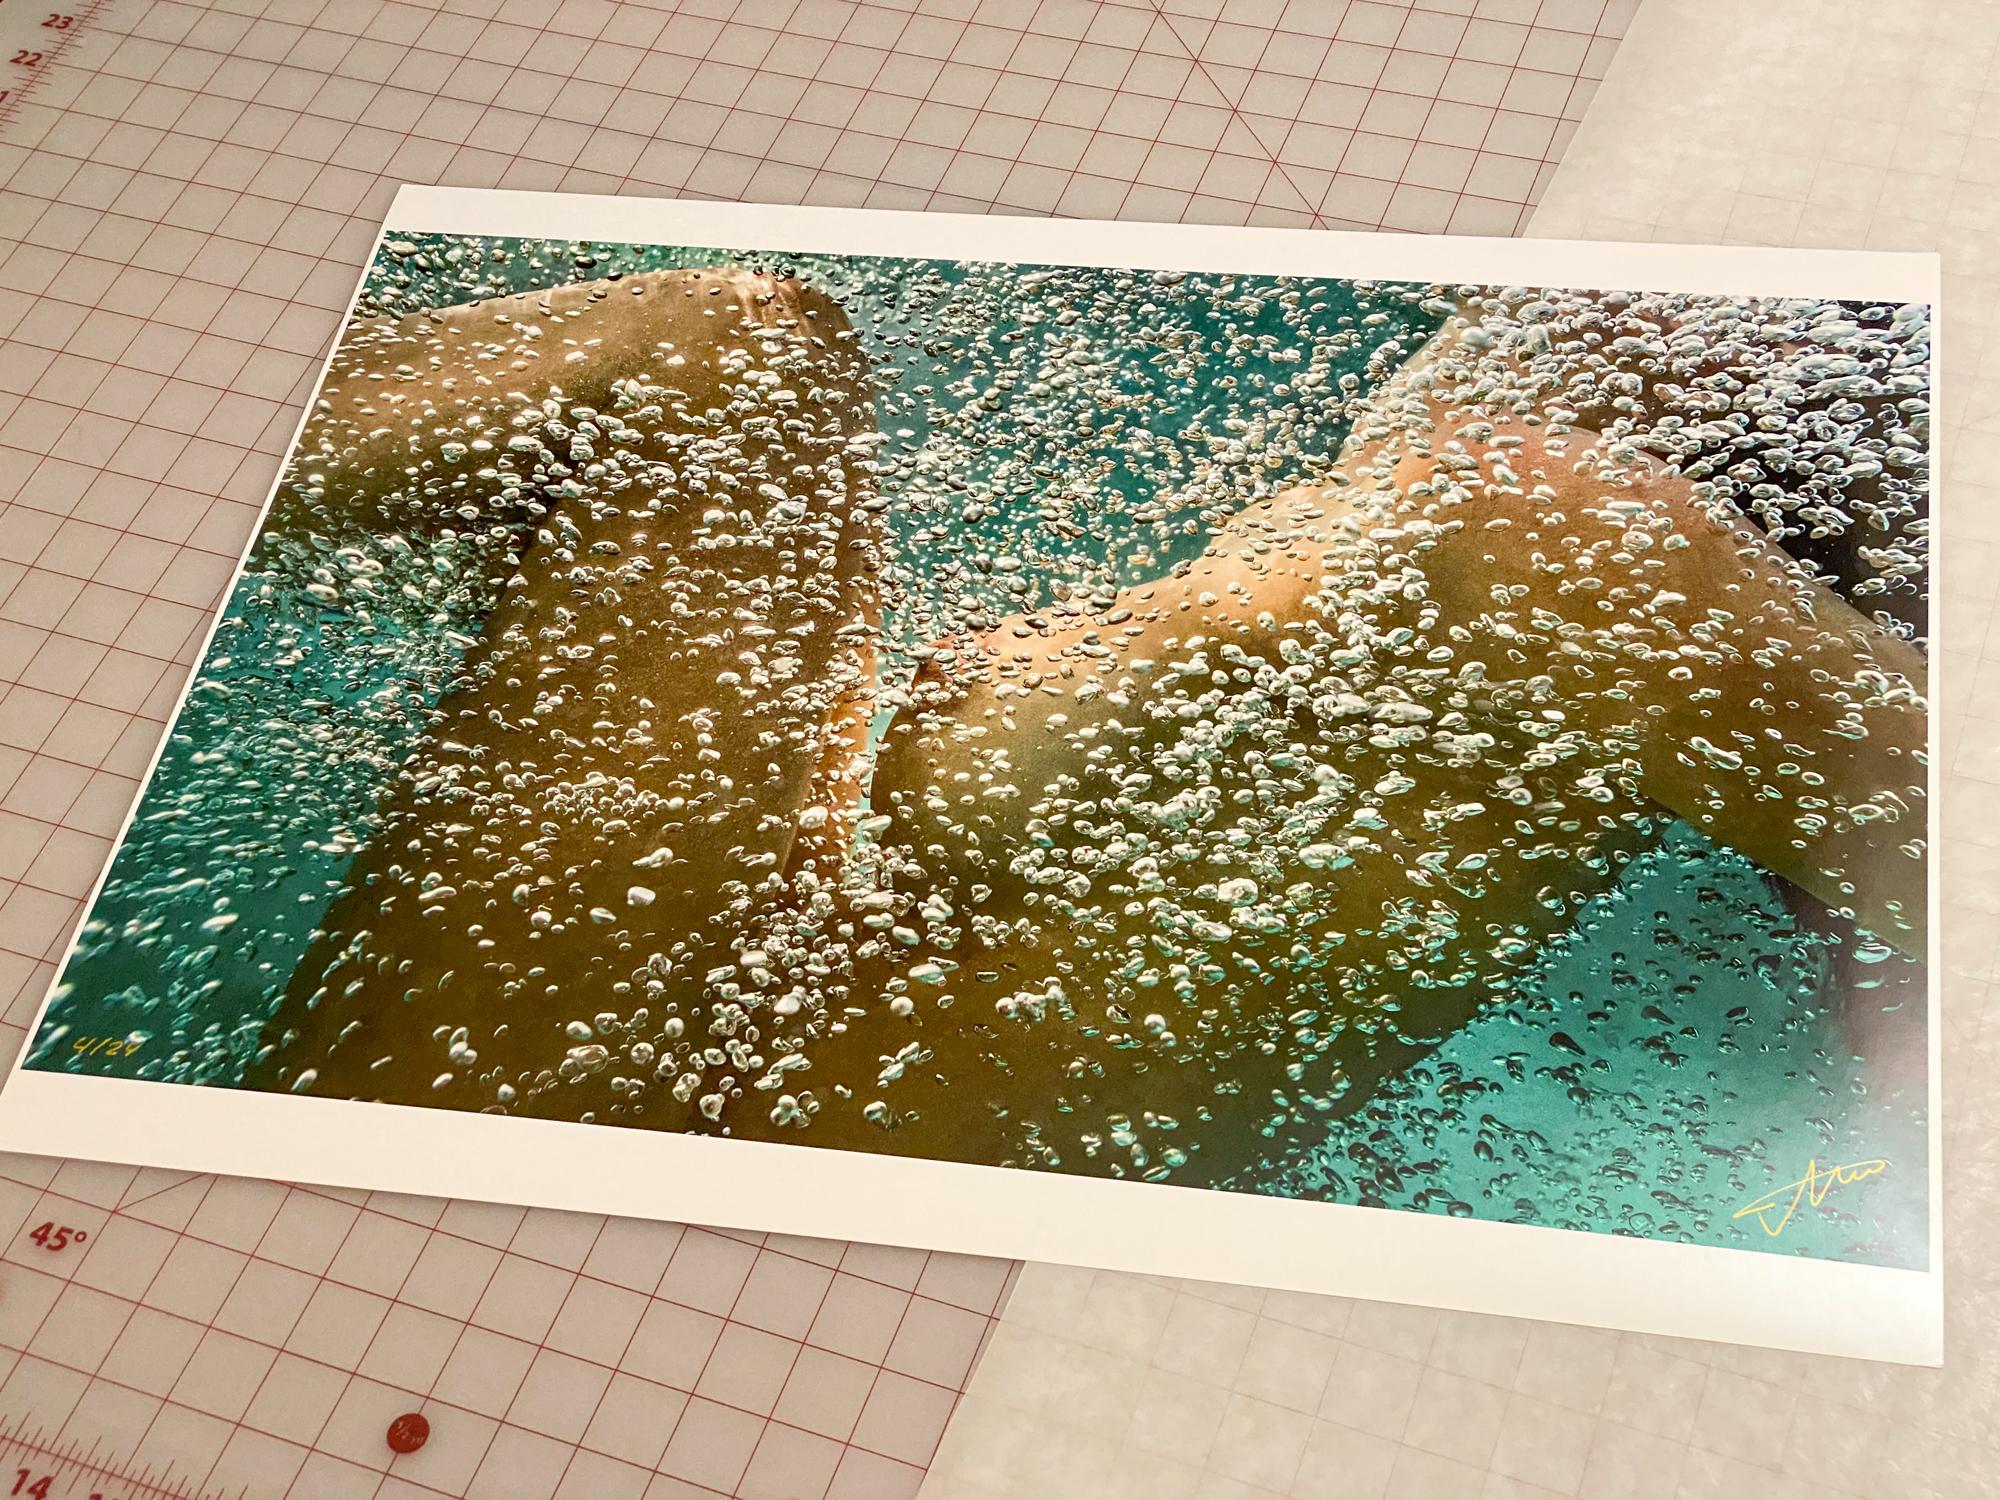 Une photo sous-marine d'une jeune femme nue enveloppée dans des bulles d'air. La photographie ne représente que son corps, le visage n'est pas visible. Une œuvre d'art très lumineuse qui attire l'œil. 

La piscine était glaciale. Après 15 minutes de